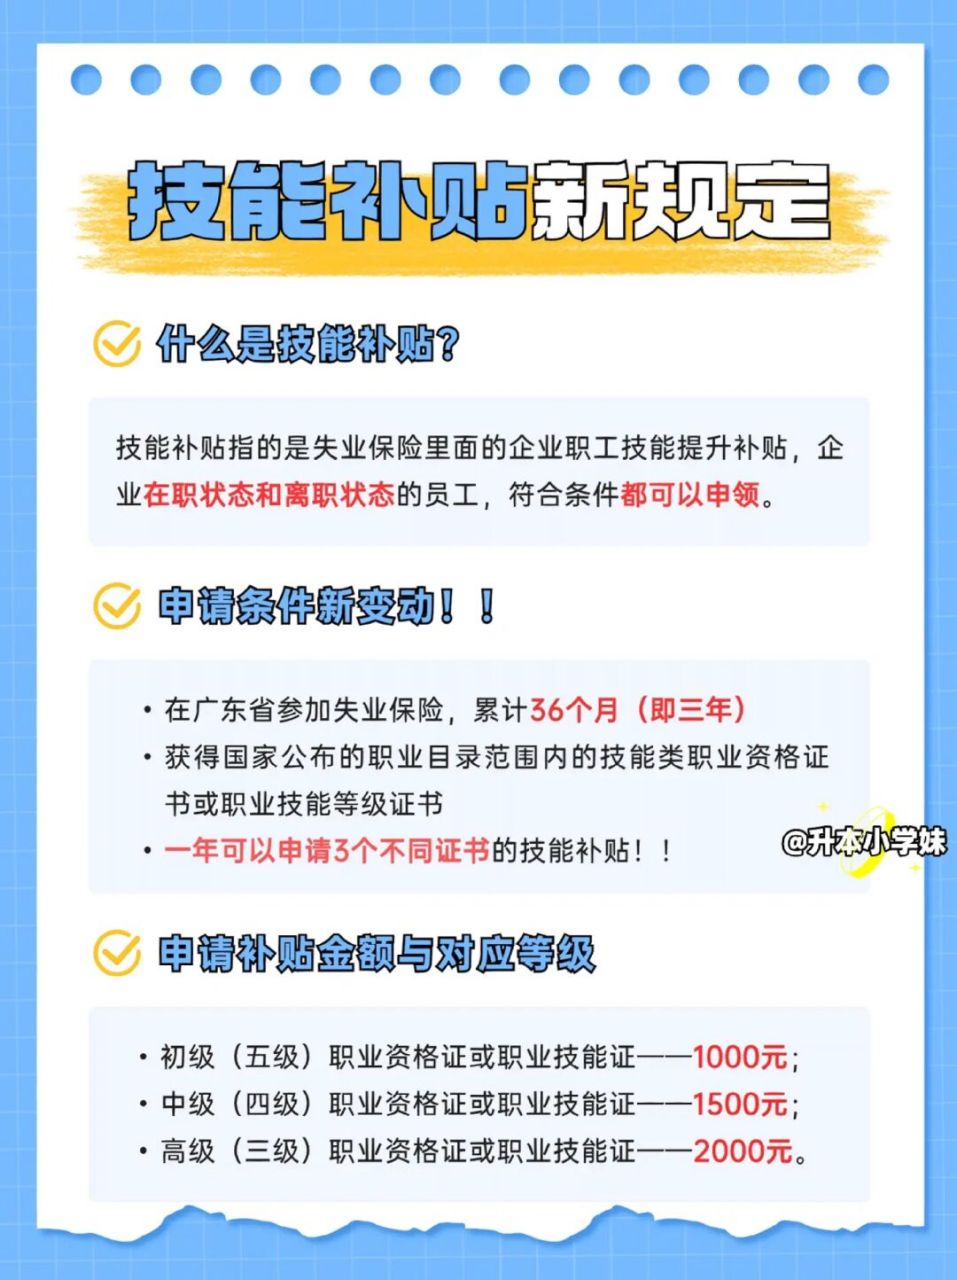 广东职业技能补贴申请新规定6015一年可领3次 近几天,广东人社发